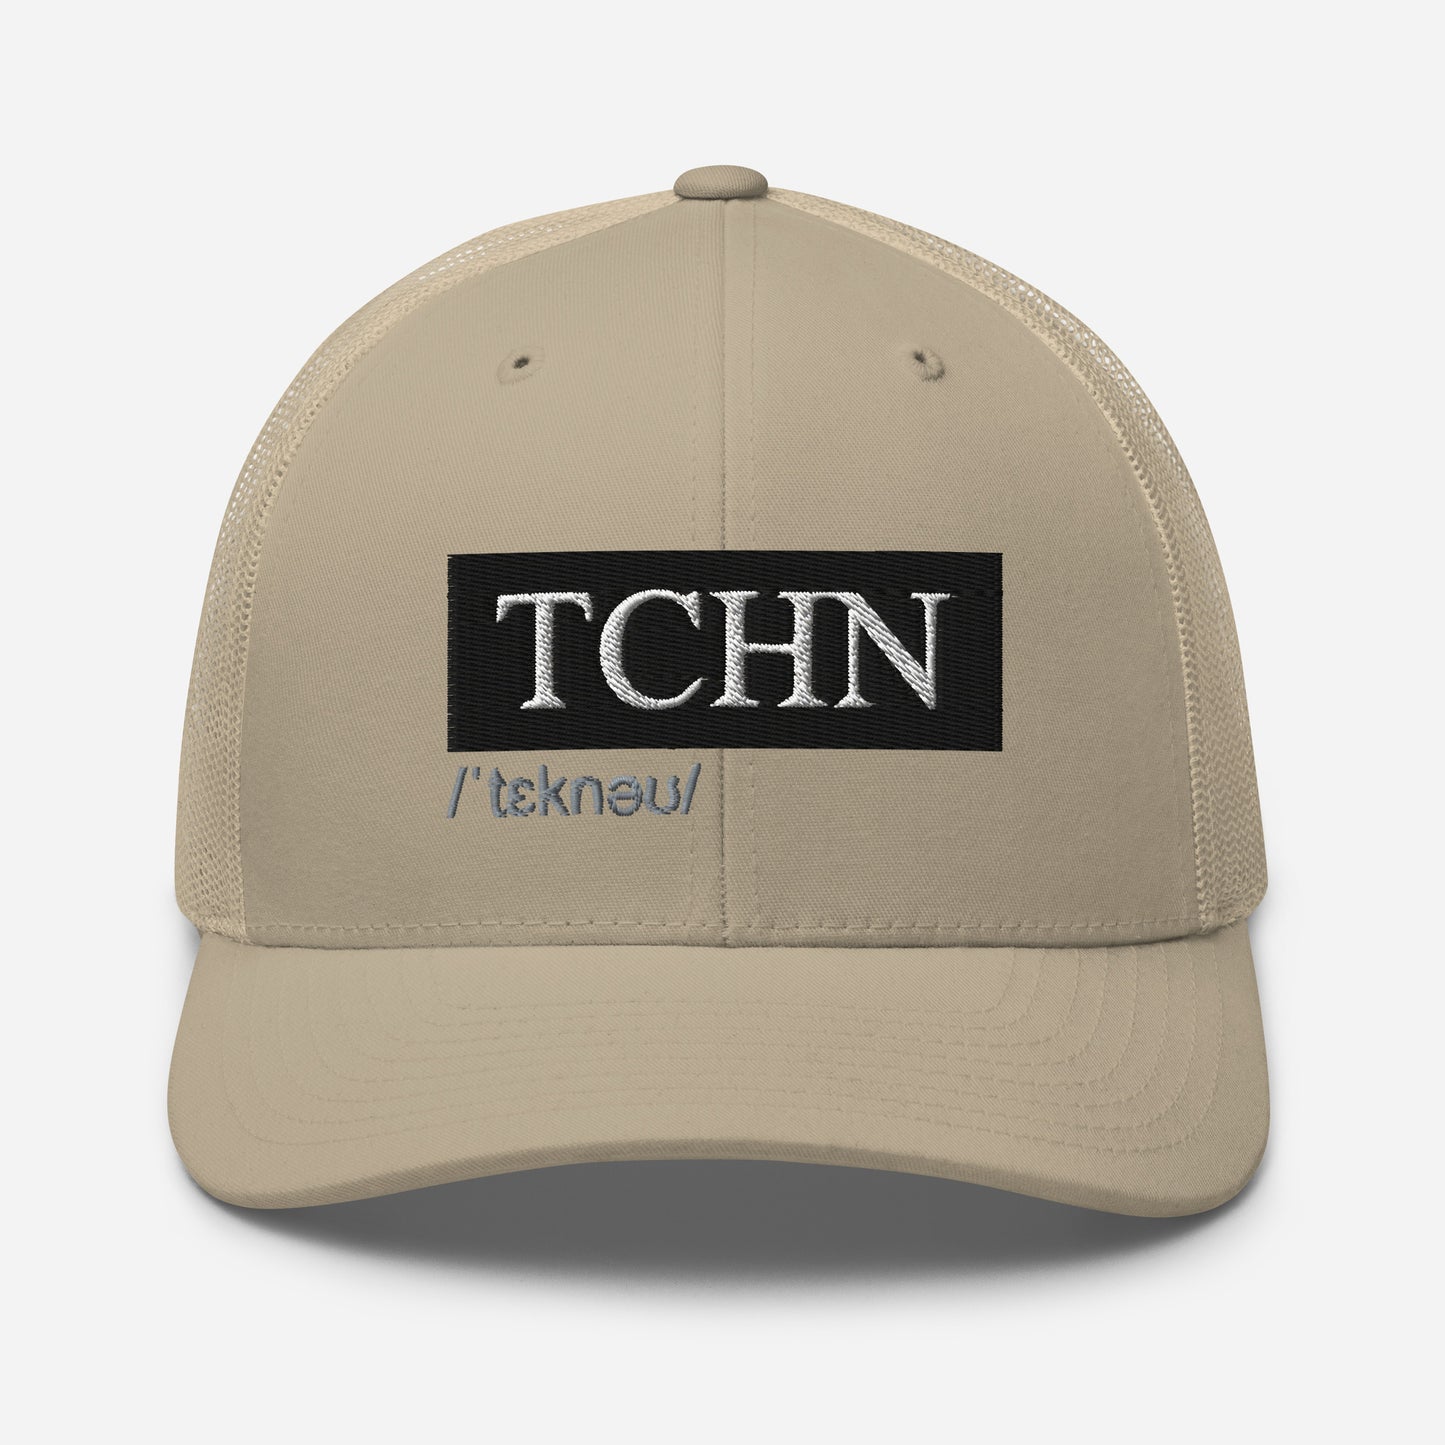 TCHN (v1) Trucker Cap (White Text)